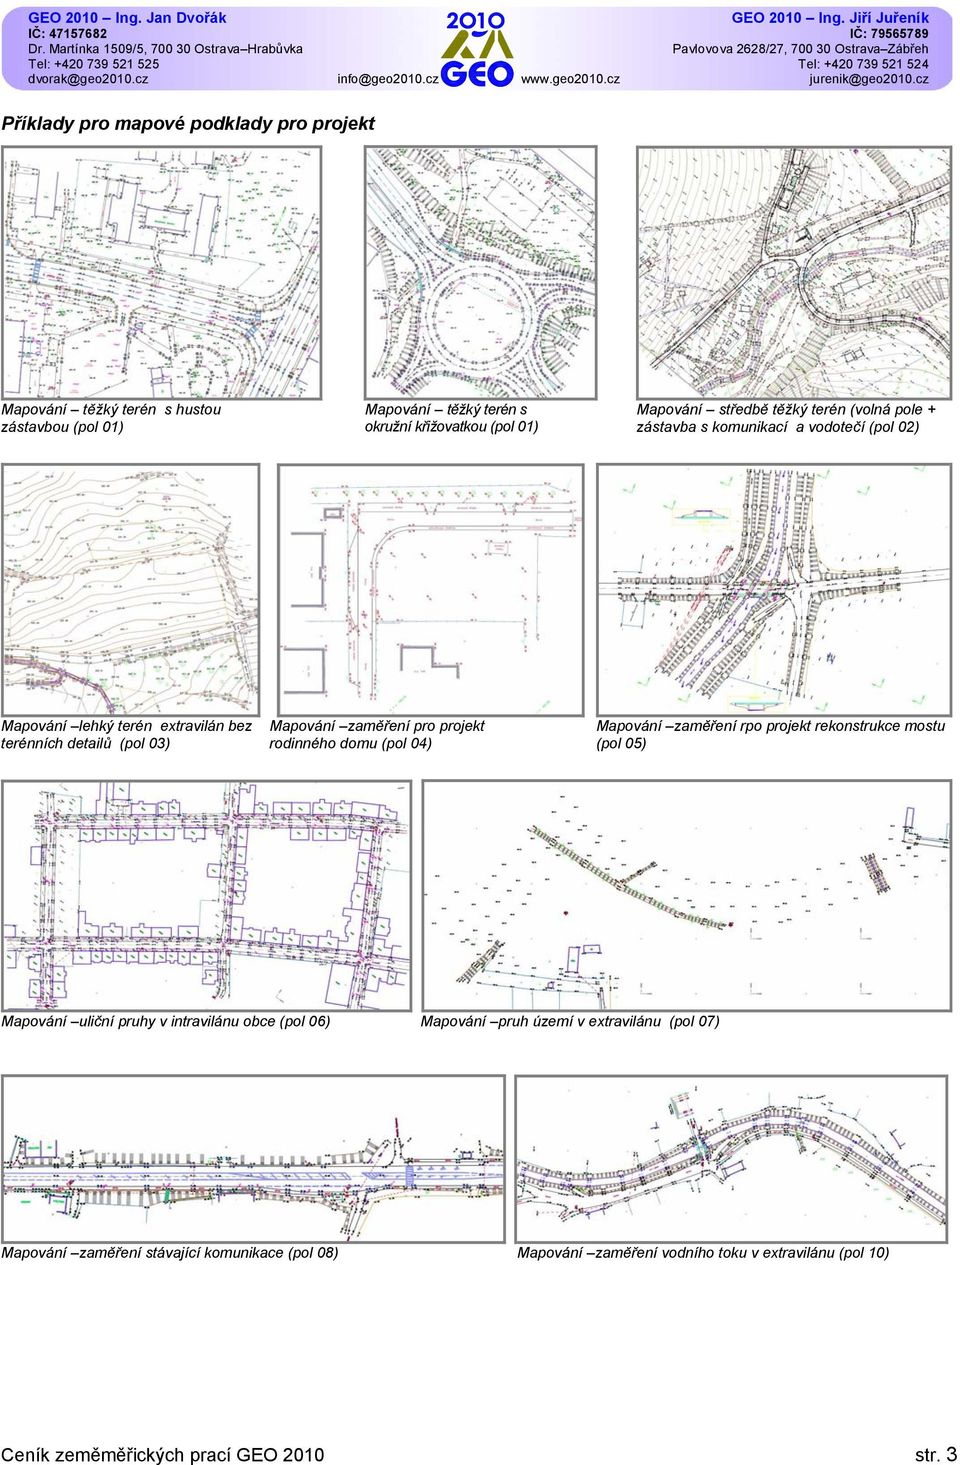 projekt rodinného domu (pol 04) Mapování zaměření rpo projekt rekonstrukce mostu (pol 05) Mapování uliční pruhy v intravilánu obce (pol 06) Mapování pruh území